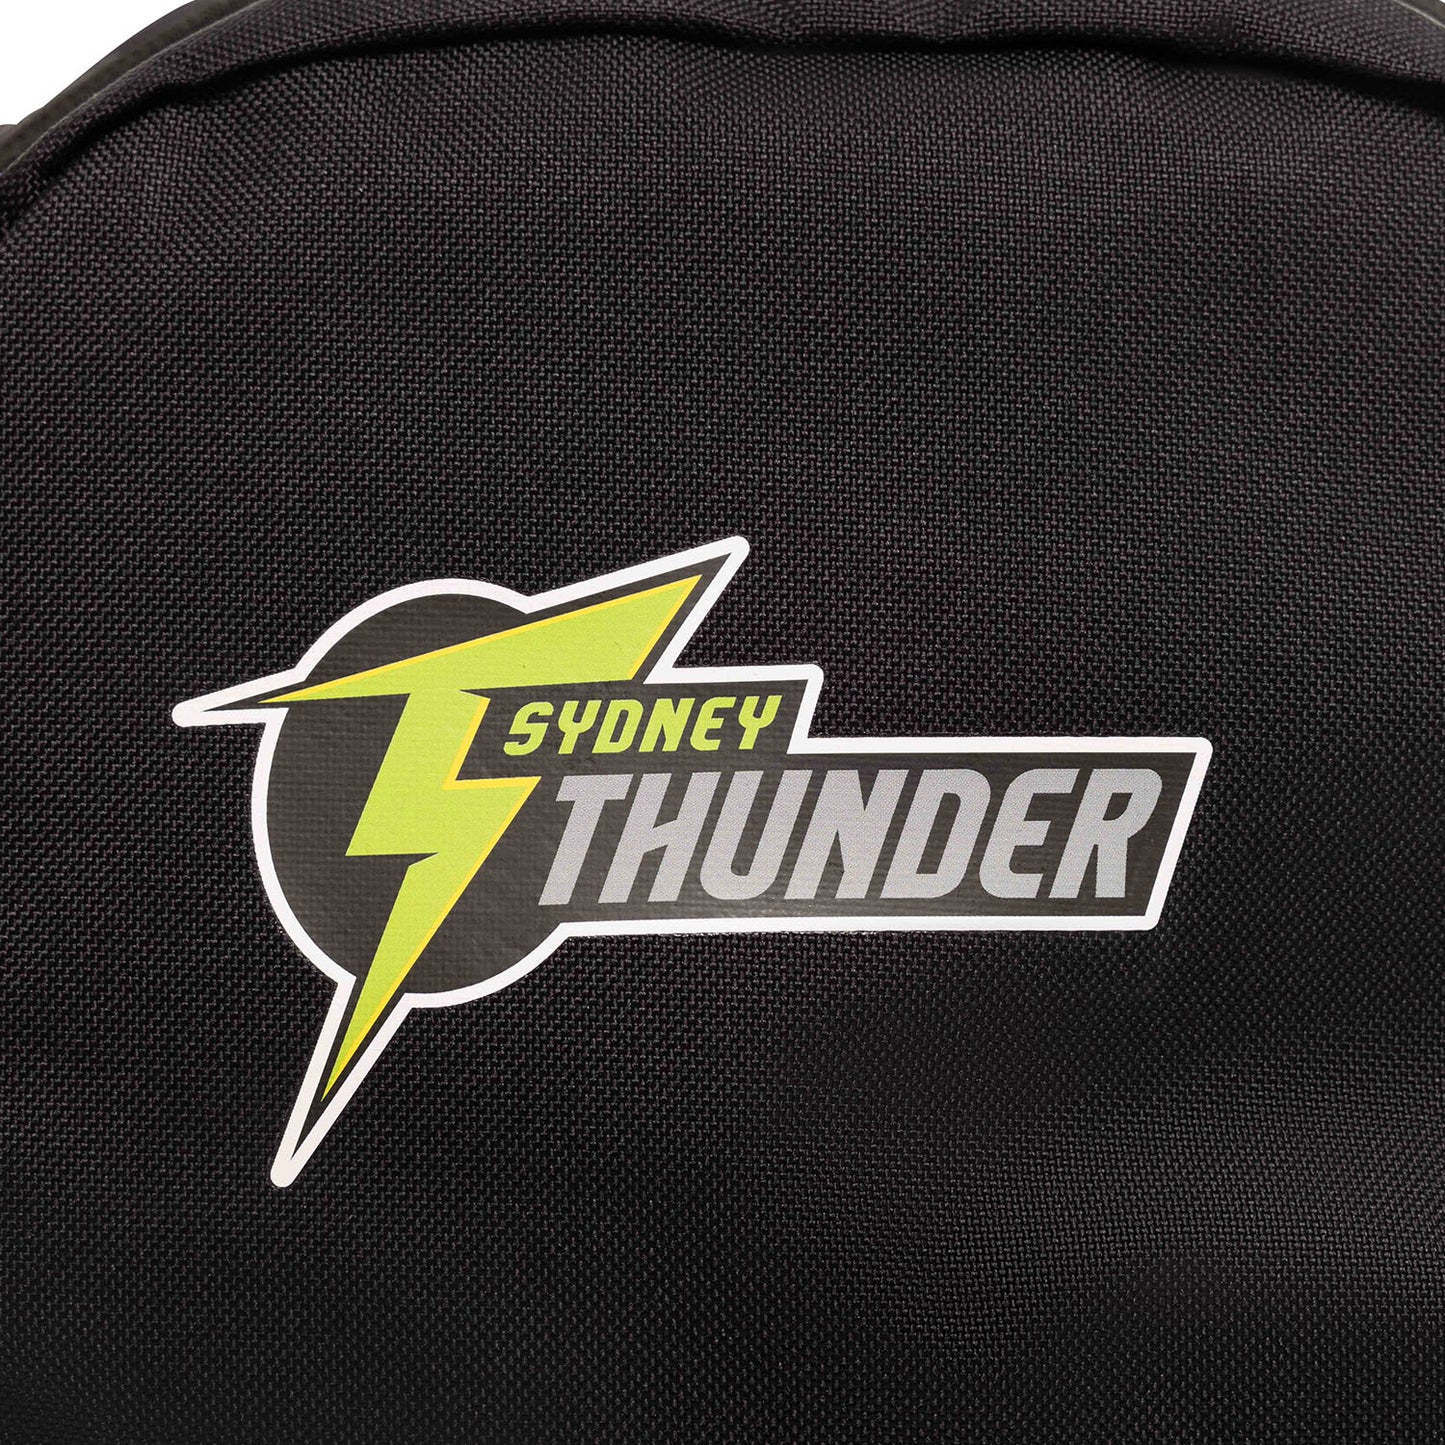 Sydney Thunder Nike Brasilia Back Pack